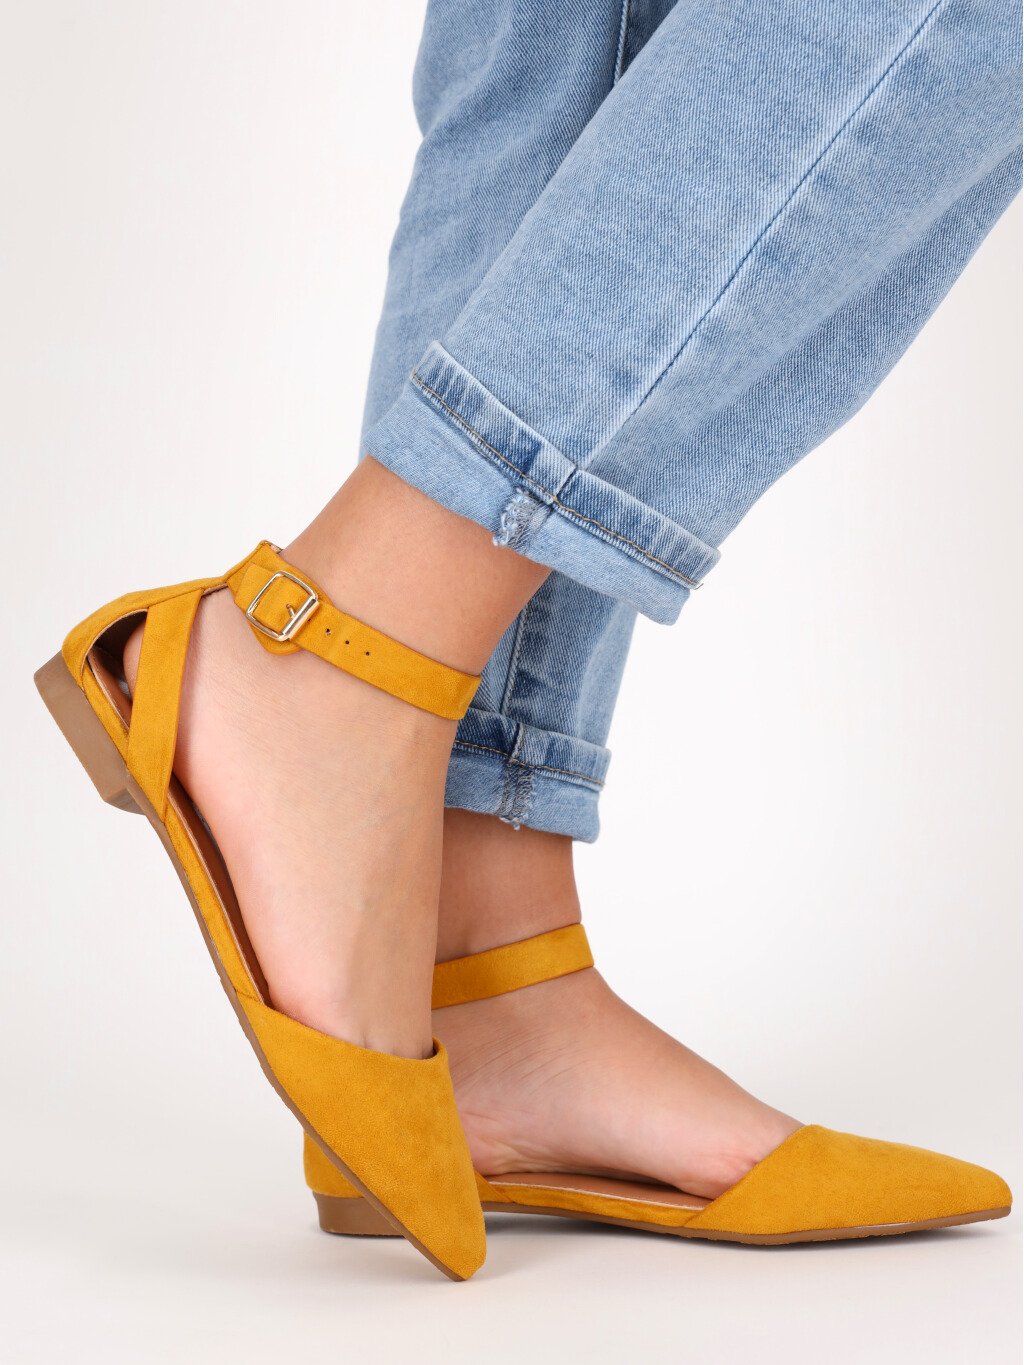 damske zlte semisove sandale CL73YELL 4